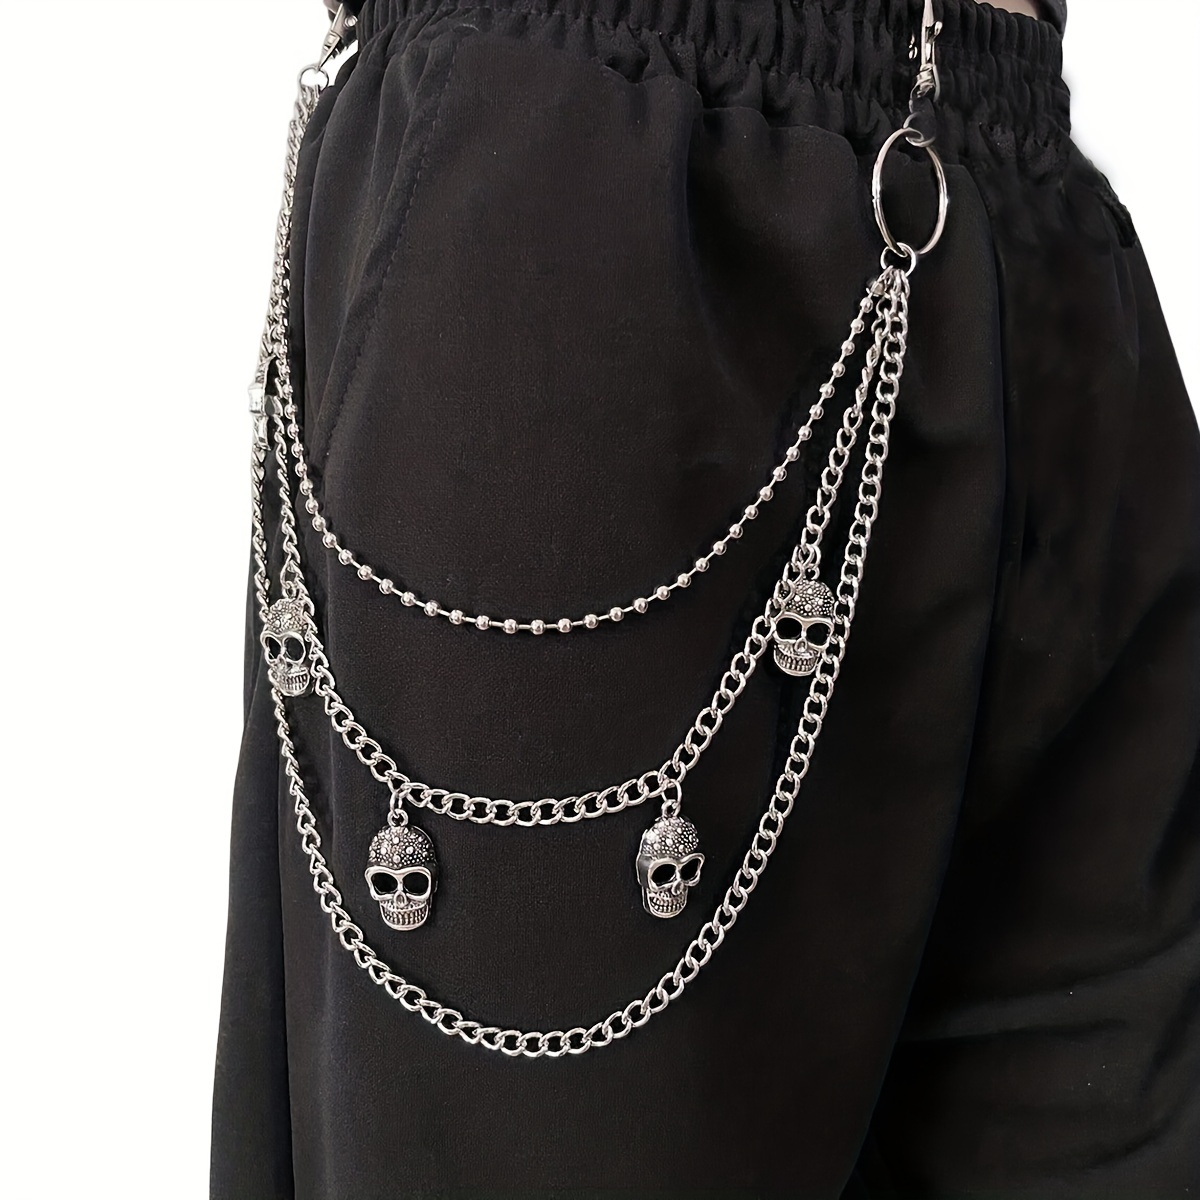 3pcs Pocket Chain Jeans Chains Women Pants Chain Waist Chain Belt C